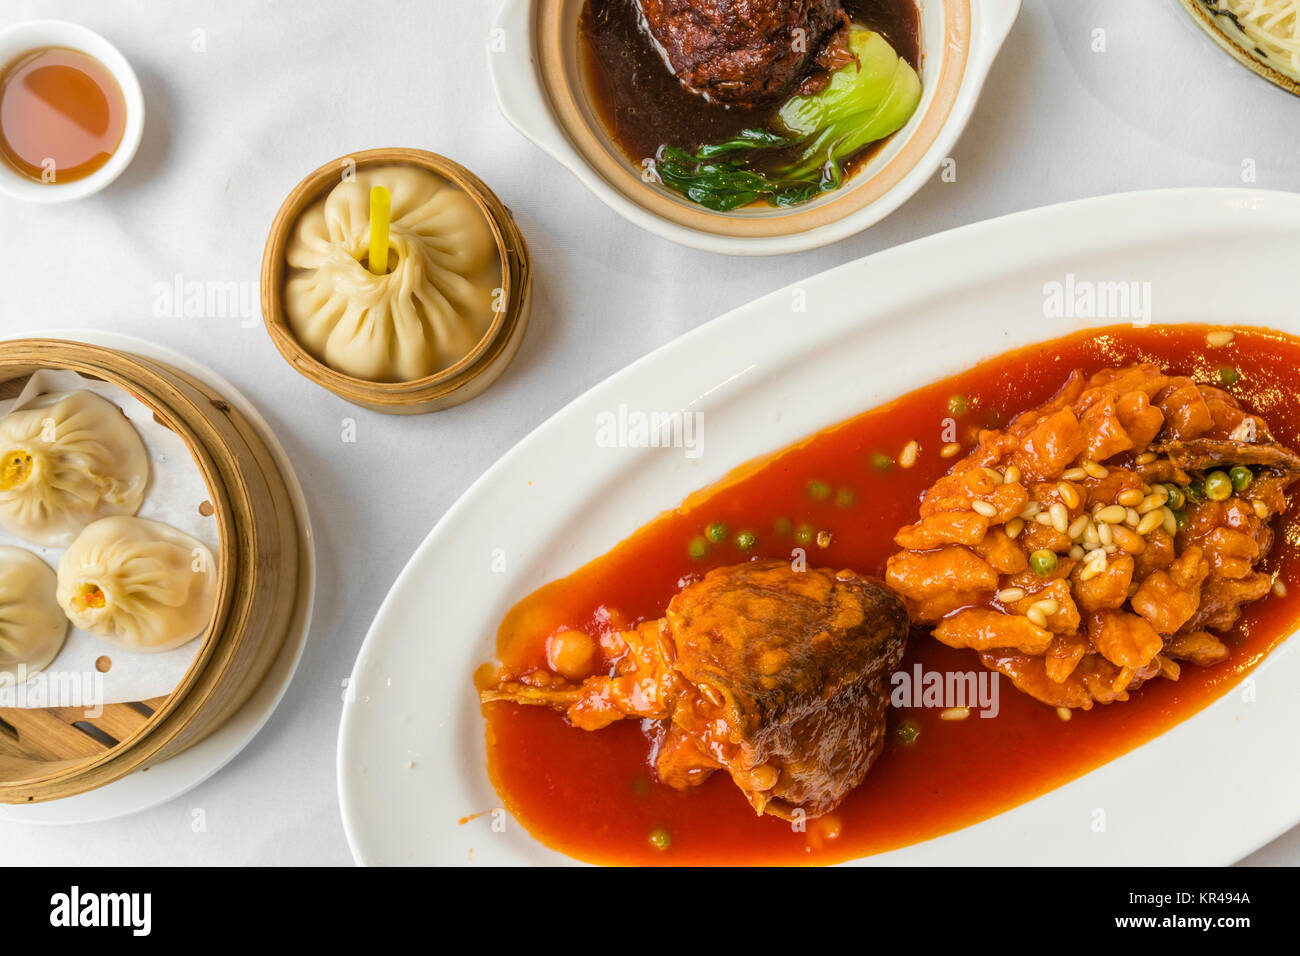 Shanghai food traditionnels y compris boulettes, compotée de meatball et poisson mandarin Banque D'Images